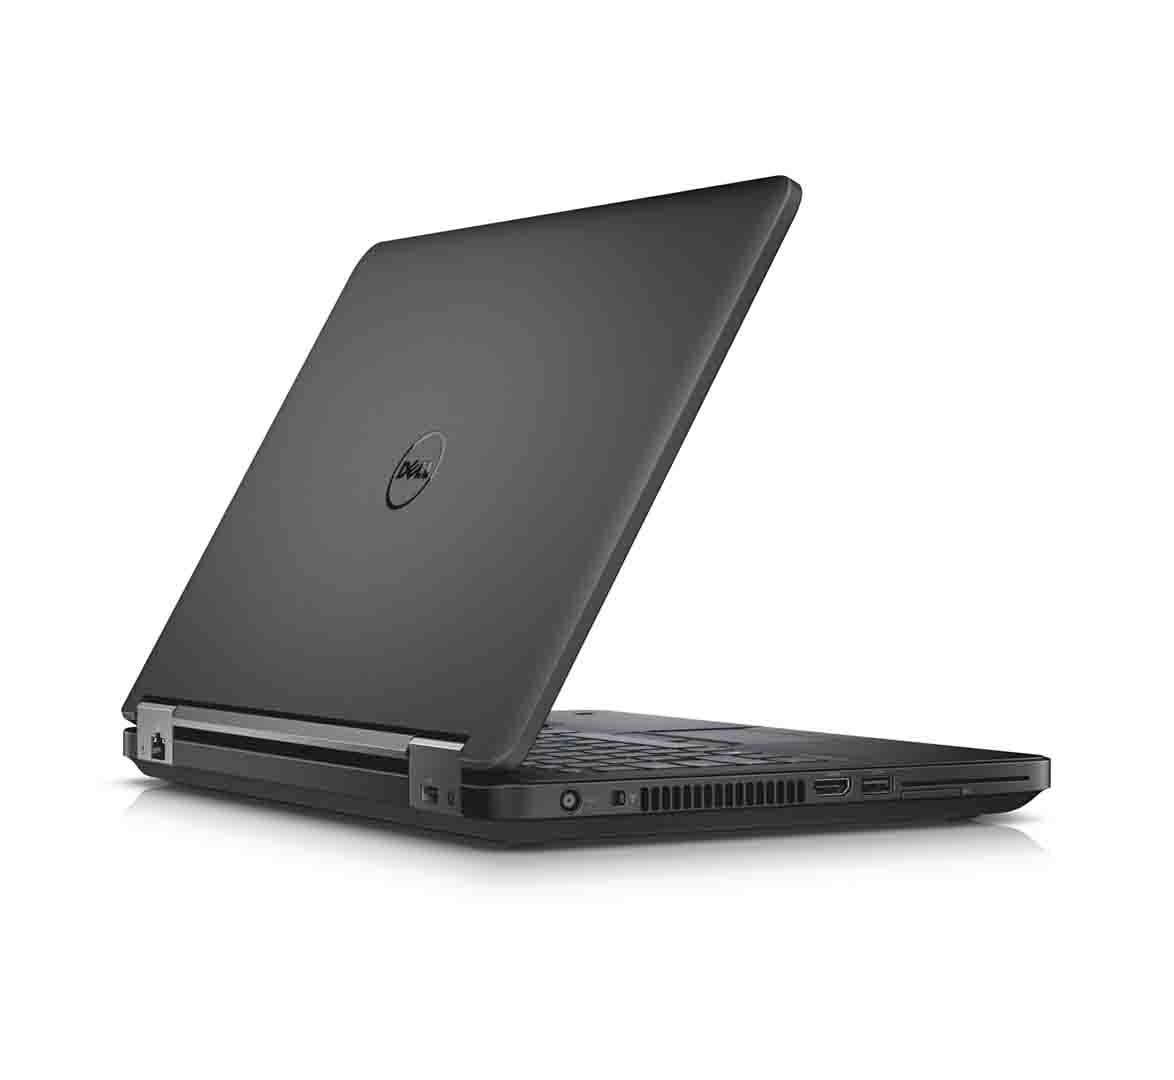 Dell Latitude E5440 Business Laptop, Intel Core i5-4th Gen CPU, 8GB RAM, 256GB SSD, 14.1 inch Display, Windows 10 Pro